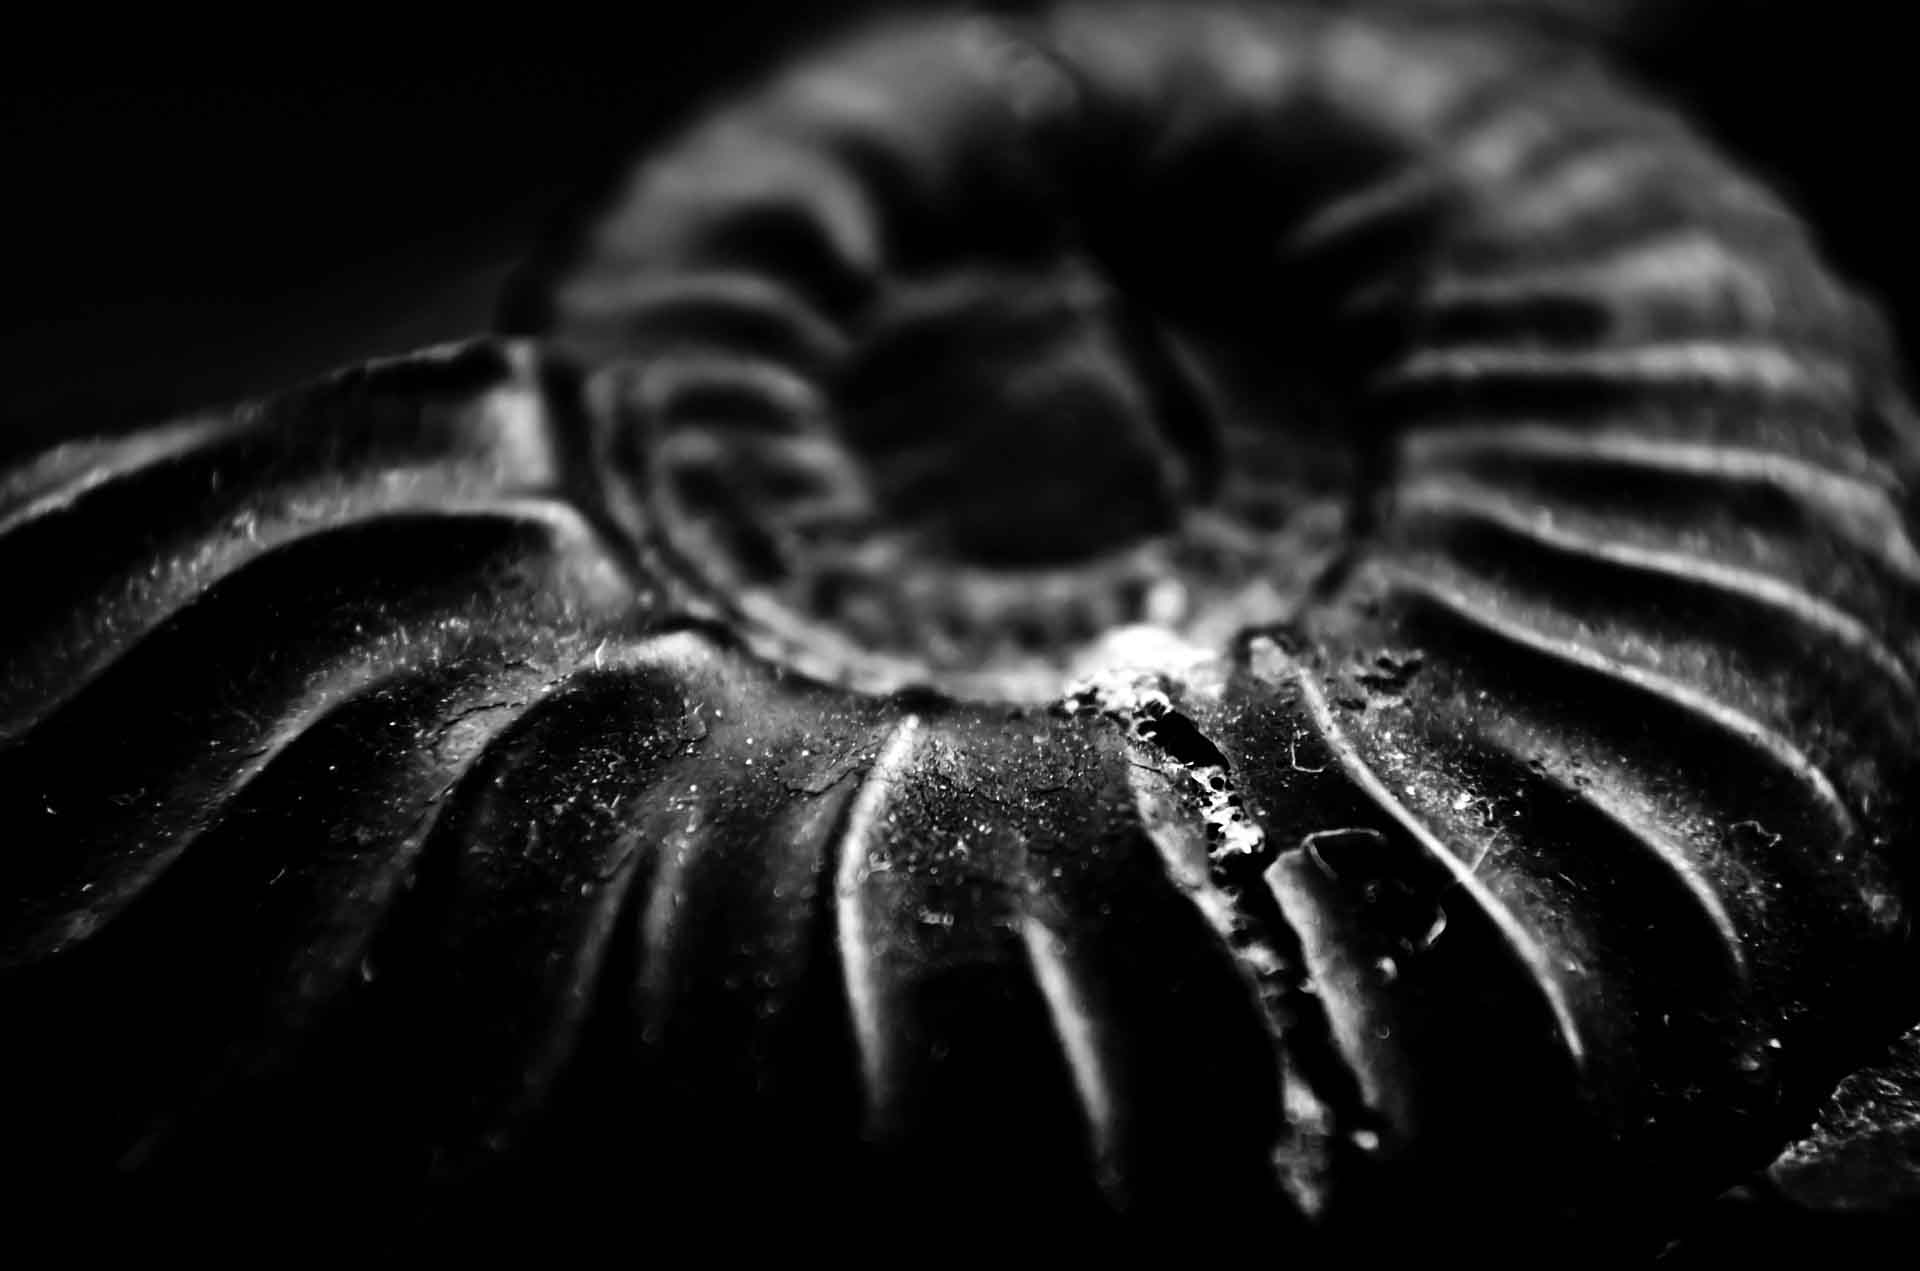 Ejemplar de fósil de amonita, uno de los invertebrados marinos subclase de moluscos cefalópodos extintos en los mares hace 65 millones de años / Foto: Pixabay